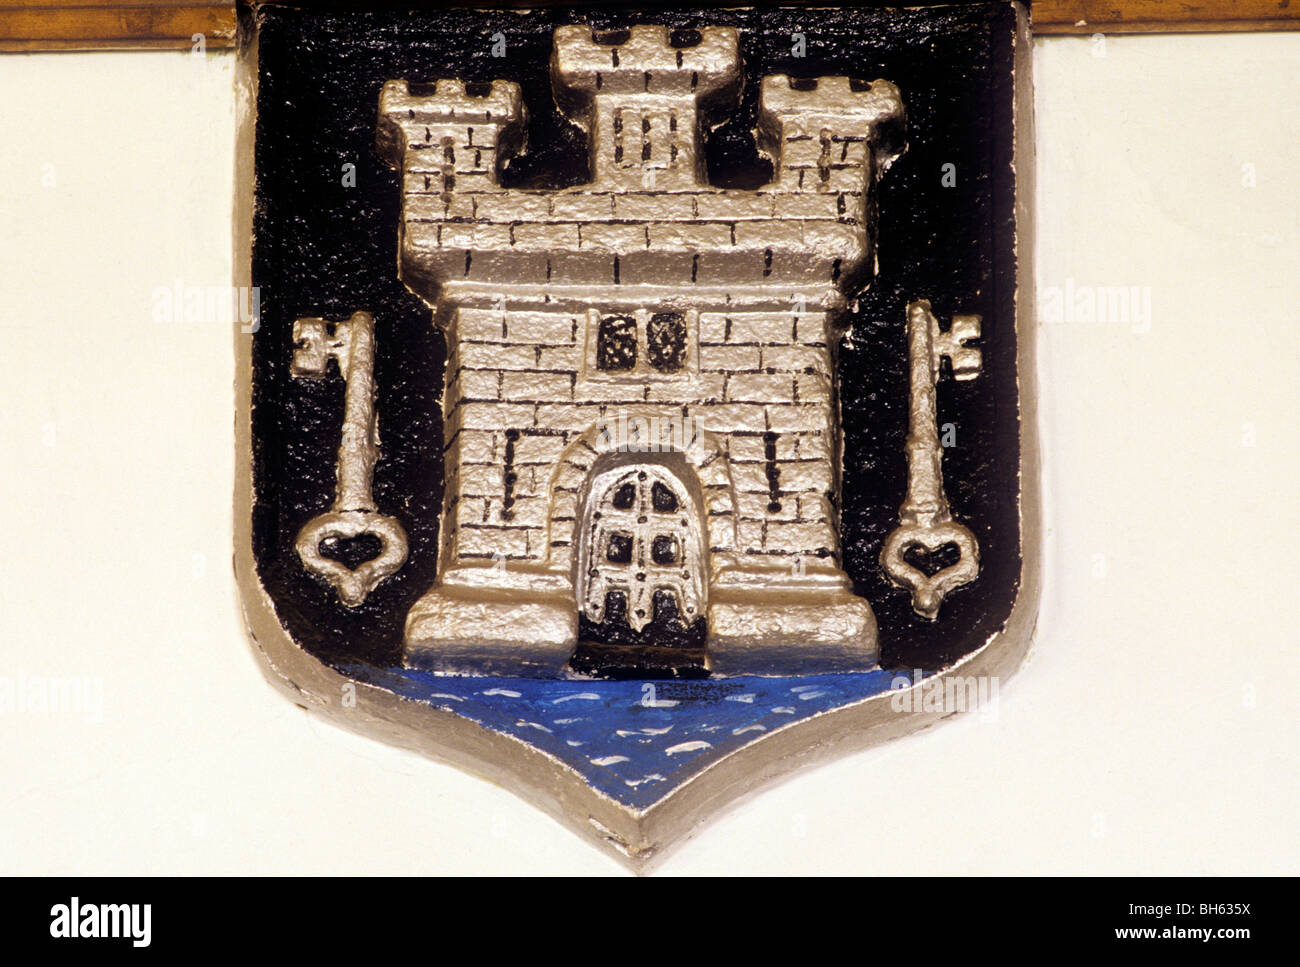 Totnes, Devon, armoiries de la ville, Guildhall Anglais Héraldique Blasons Héraldique périphériques périphériques England UK boucliers bouclier Banque D'Images